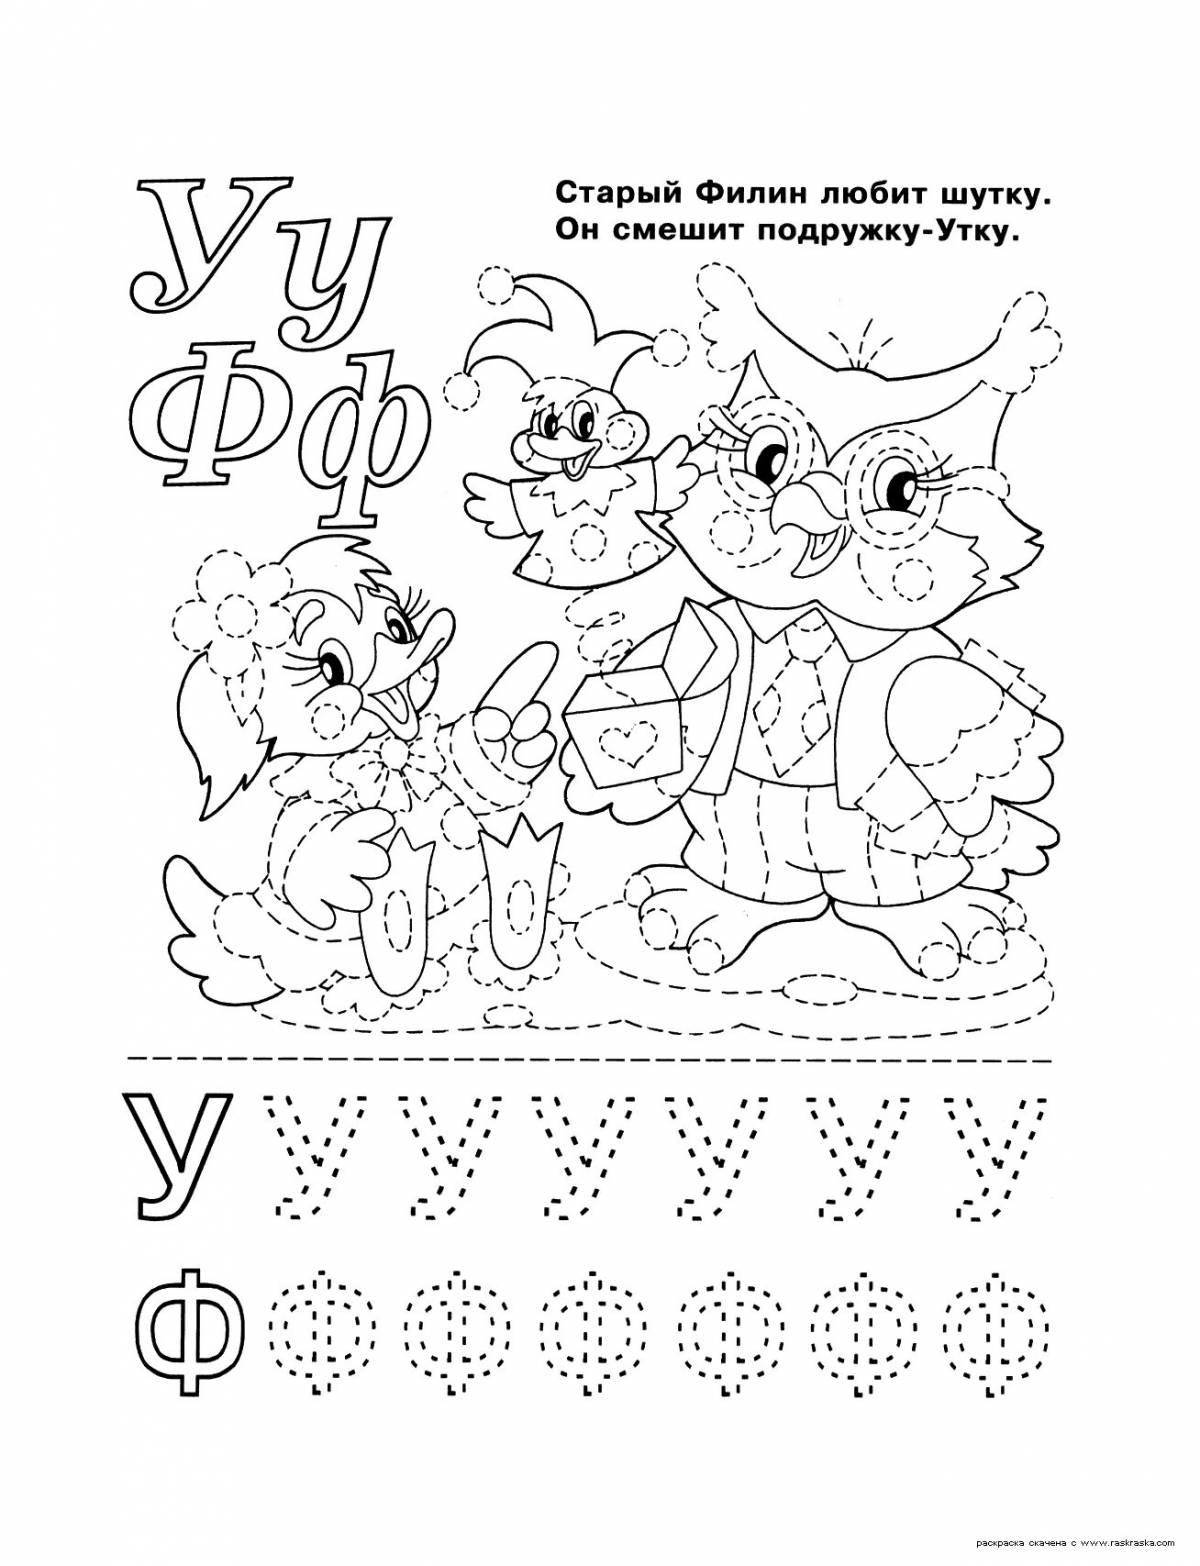 Радостный алфавит раскраски для детей 5-6 лет